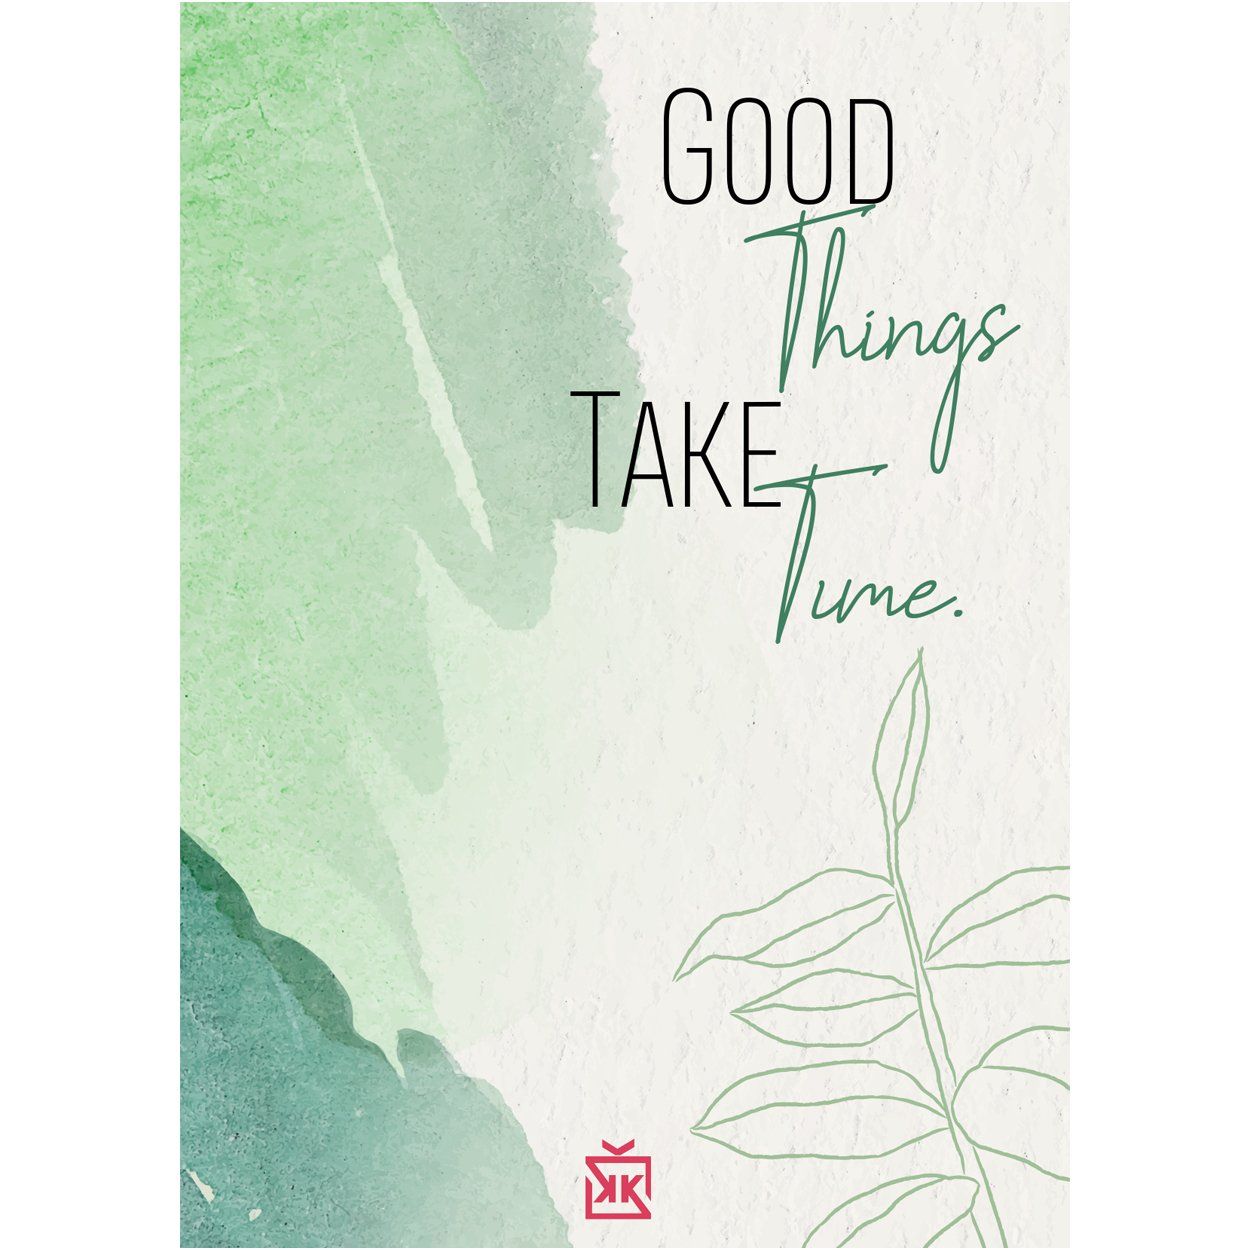 203712-good-things-take-time-motto-karti